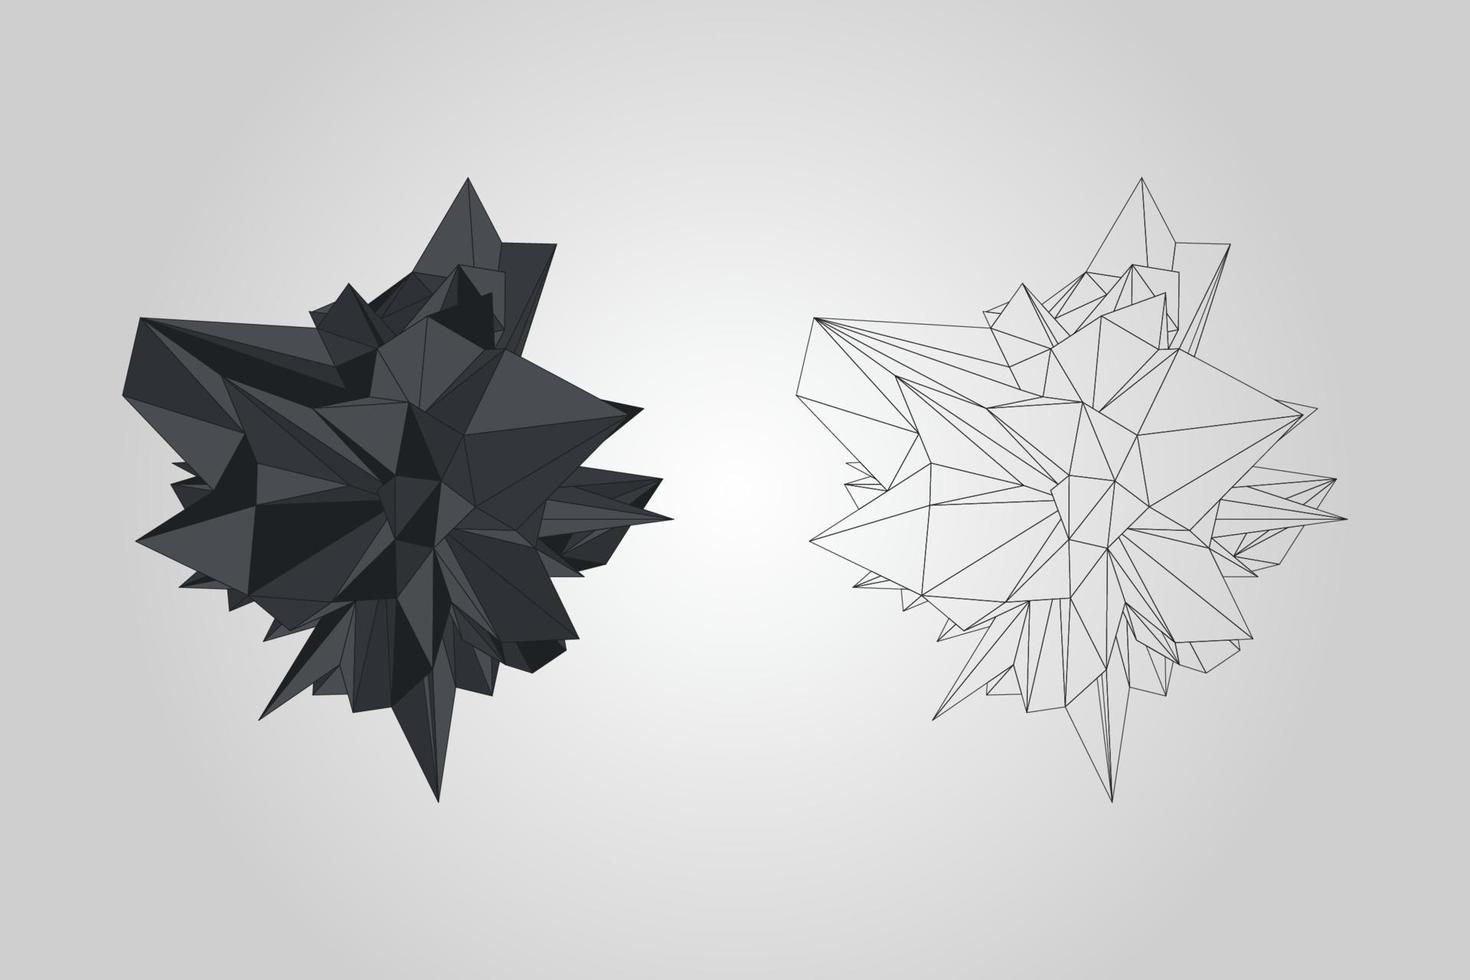 objeto decorativo poligonal de estructura metálica negra en el estilo geométrico vector